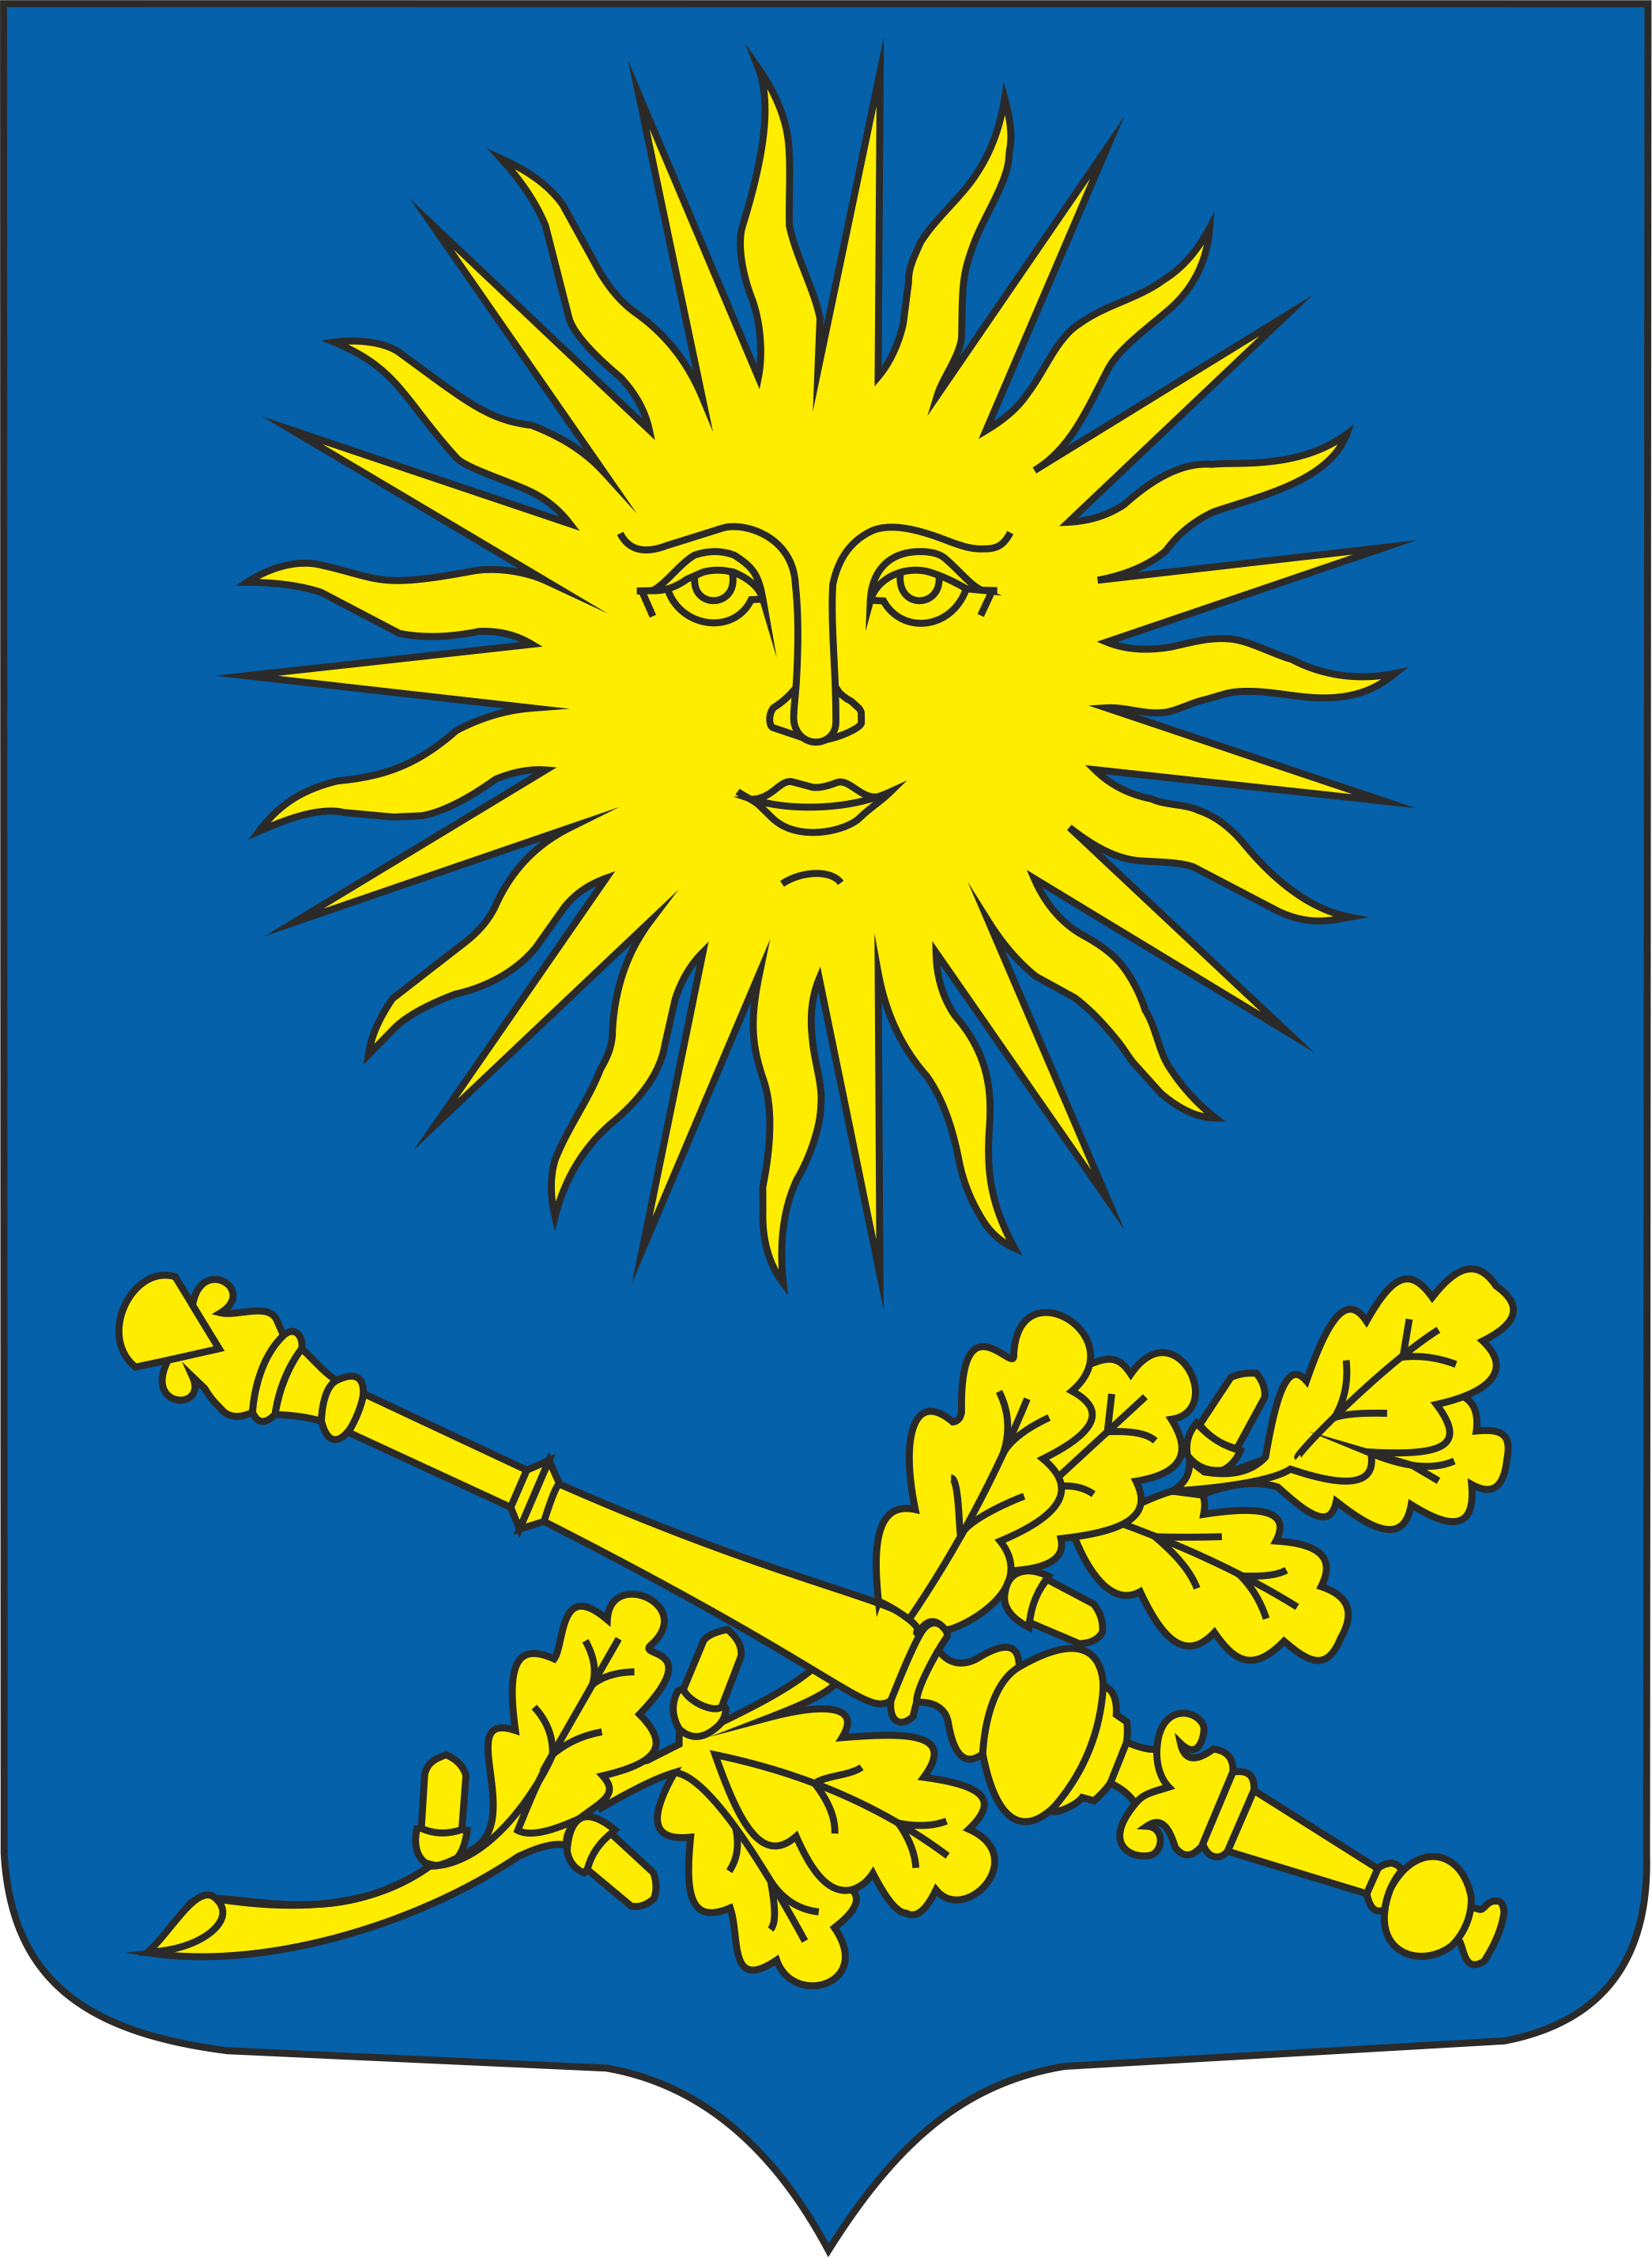 Maksim Tank Belarusian State Pedagogic University logo